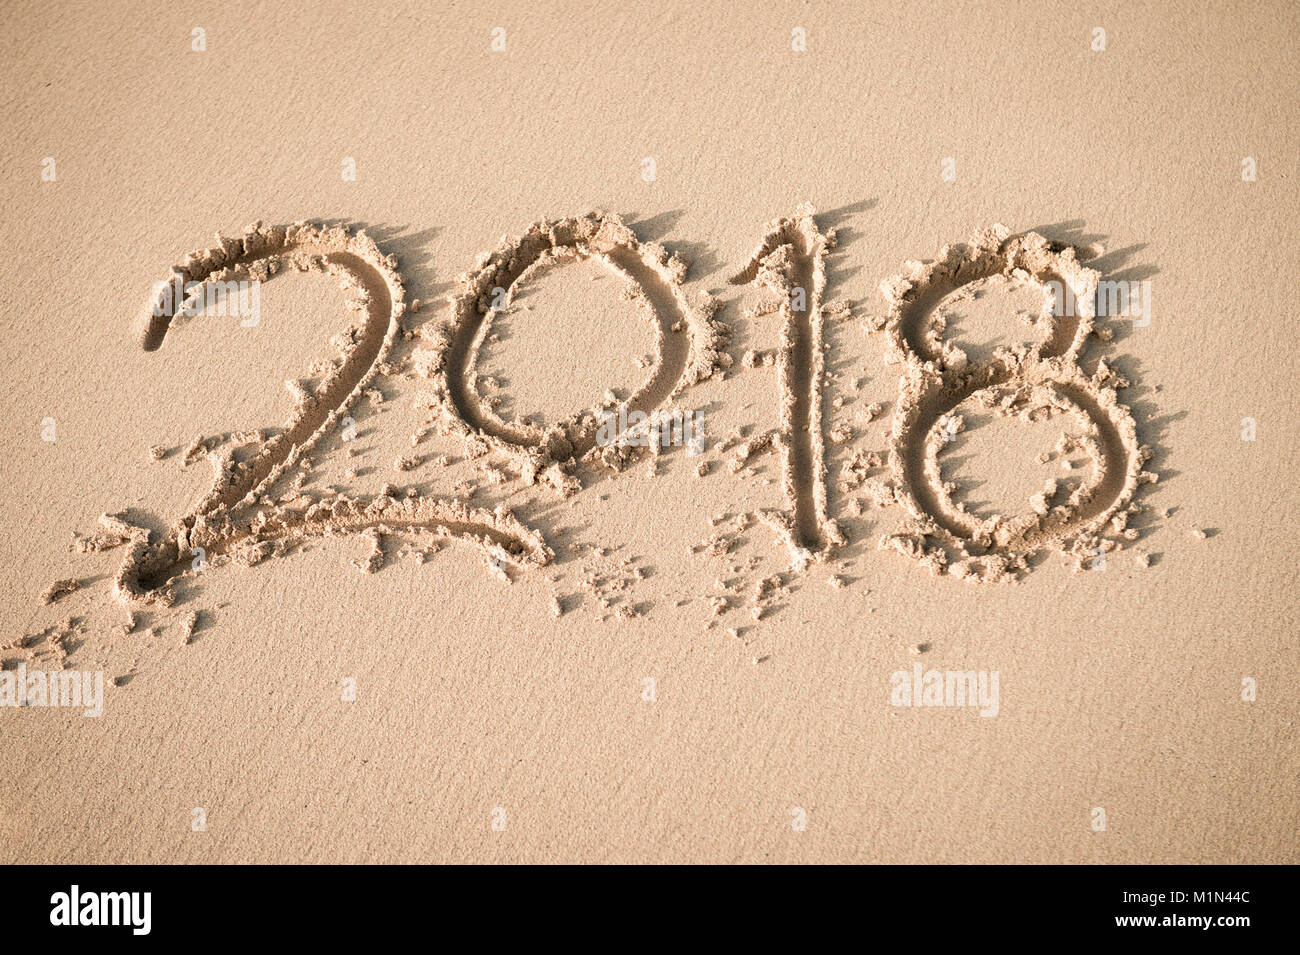 Nuovo anno 2018 messaggio manoscritta su una superficie liscia di spiaggia di sabbia soffice nella luce del sole di mattina Foto Stock